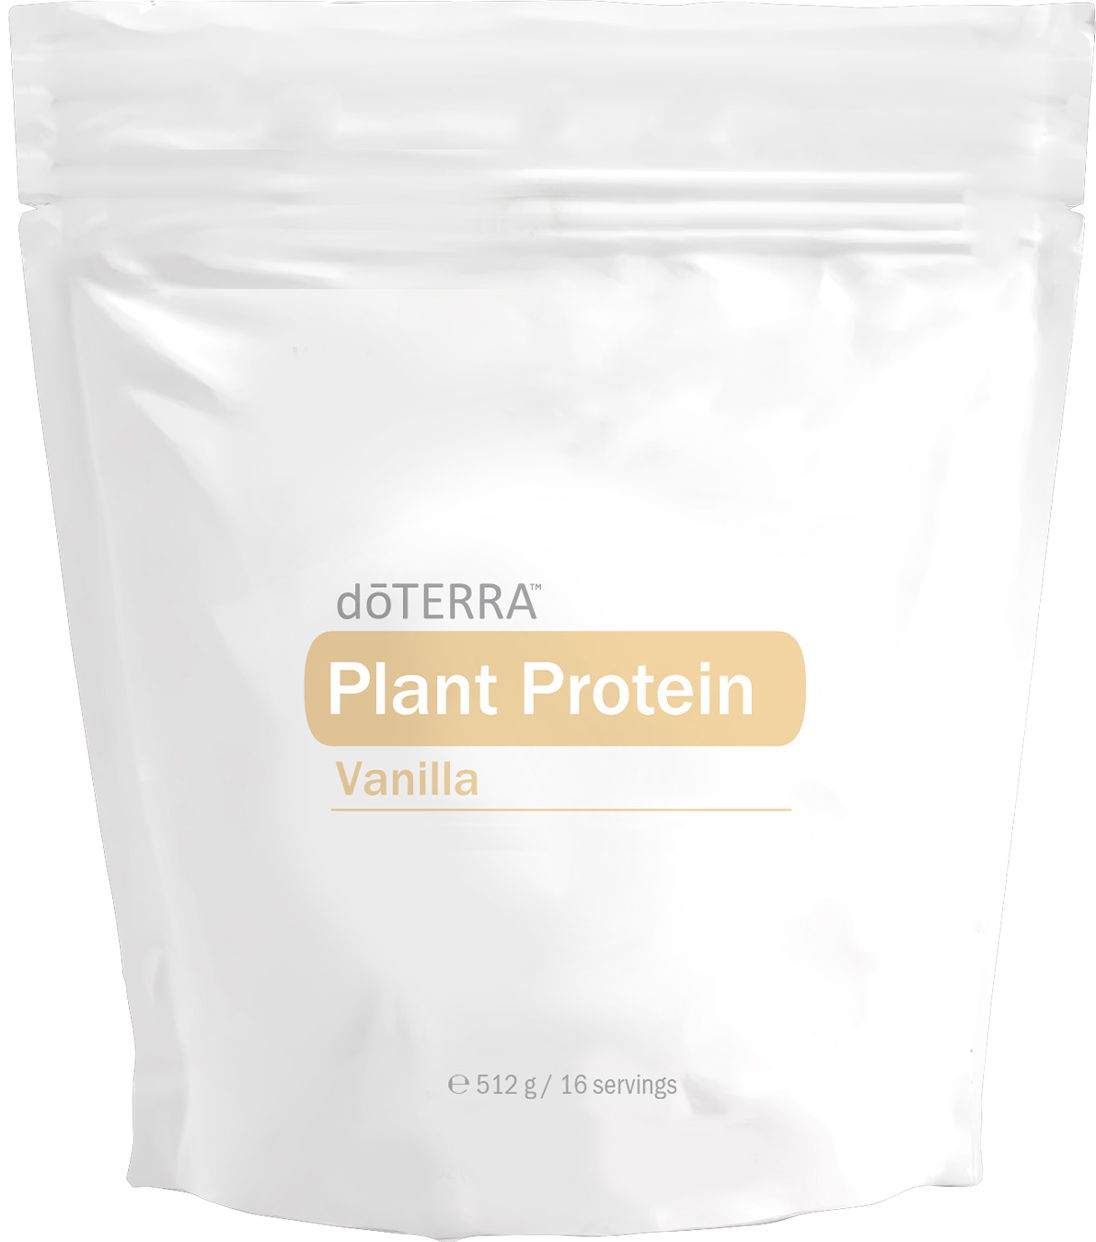 Vanilkový rostlinný protein dōTERRA™